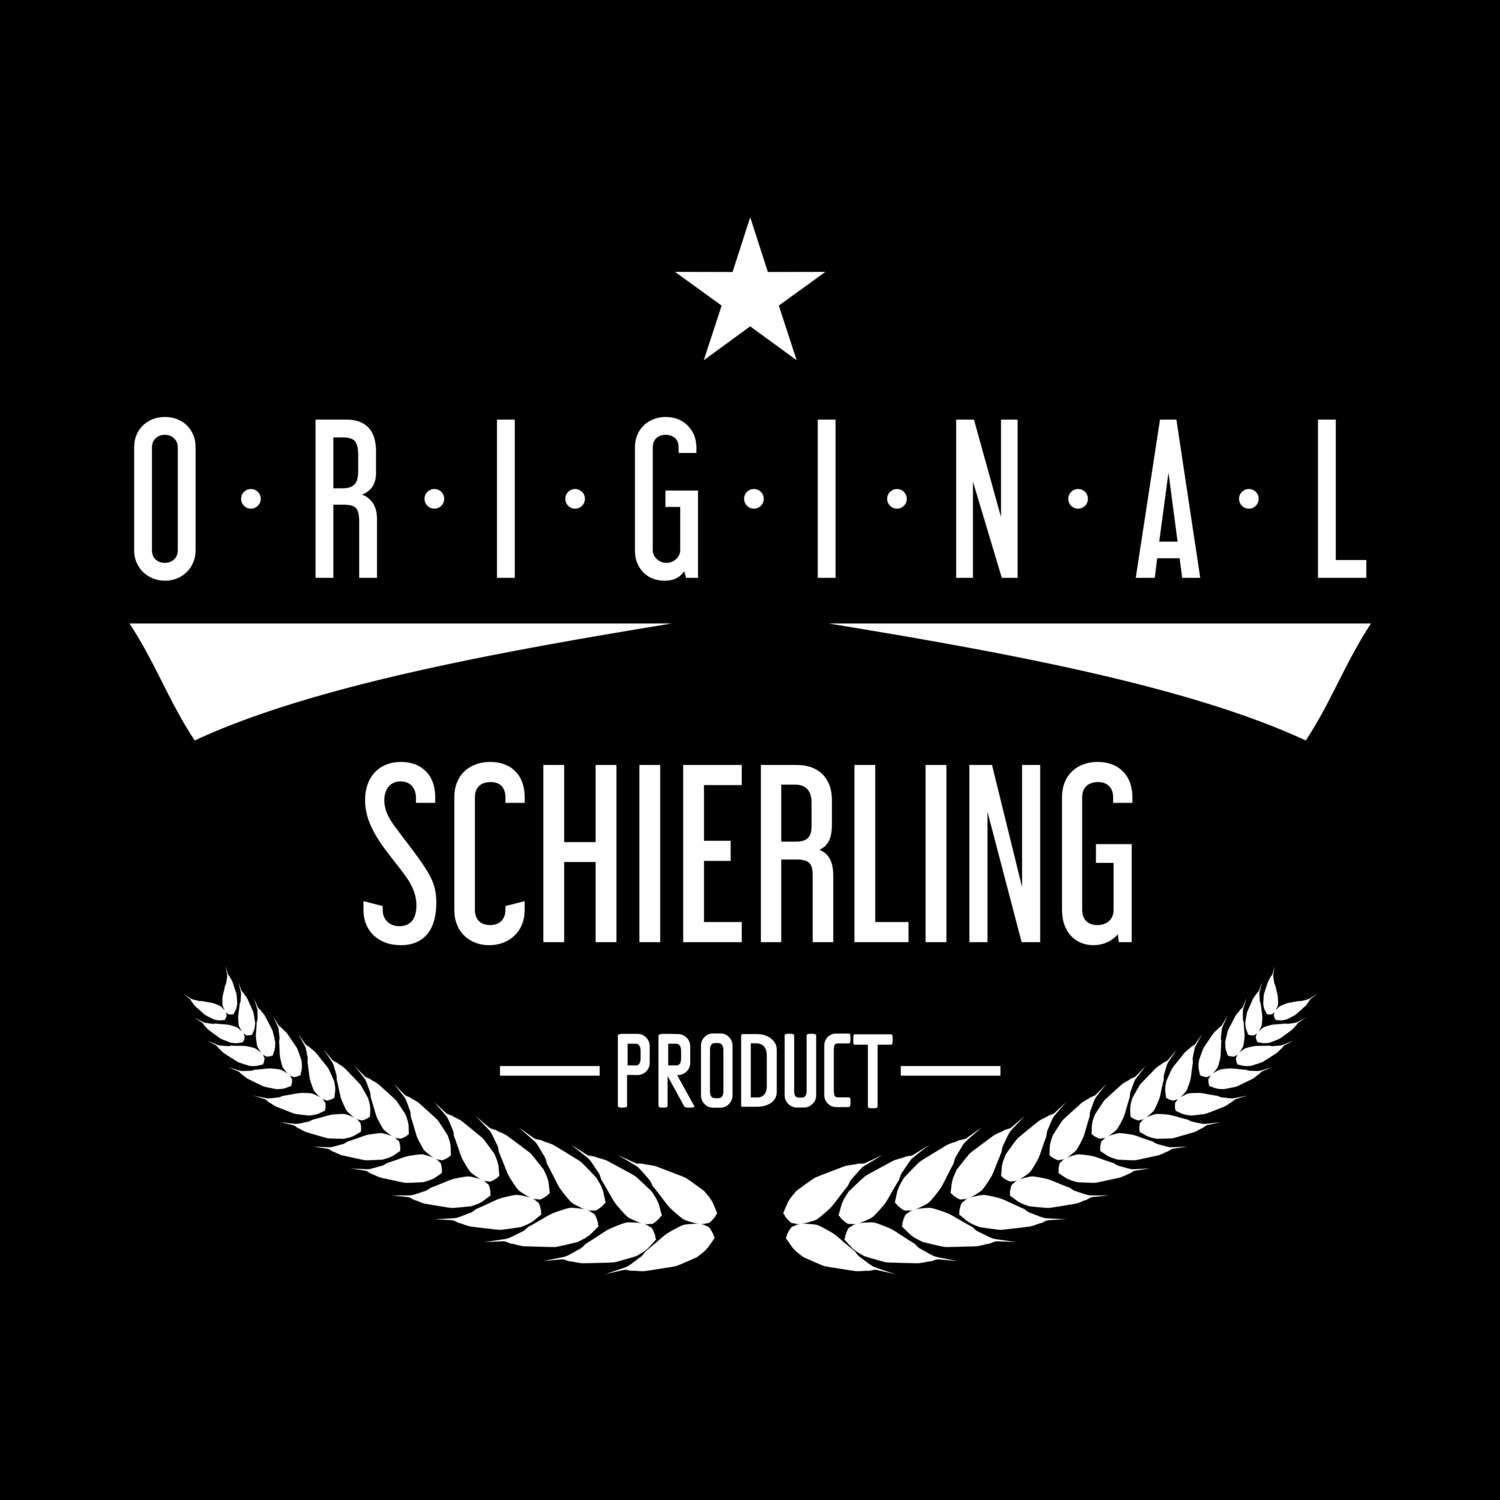 Schierling T-Shirt »Original Product«